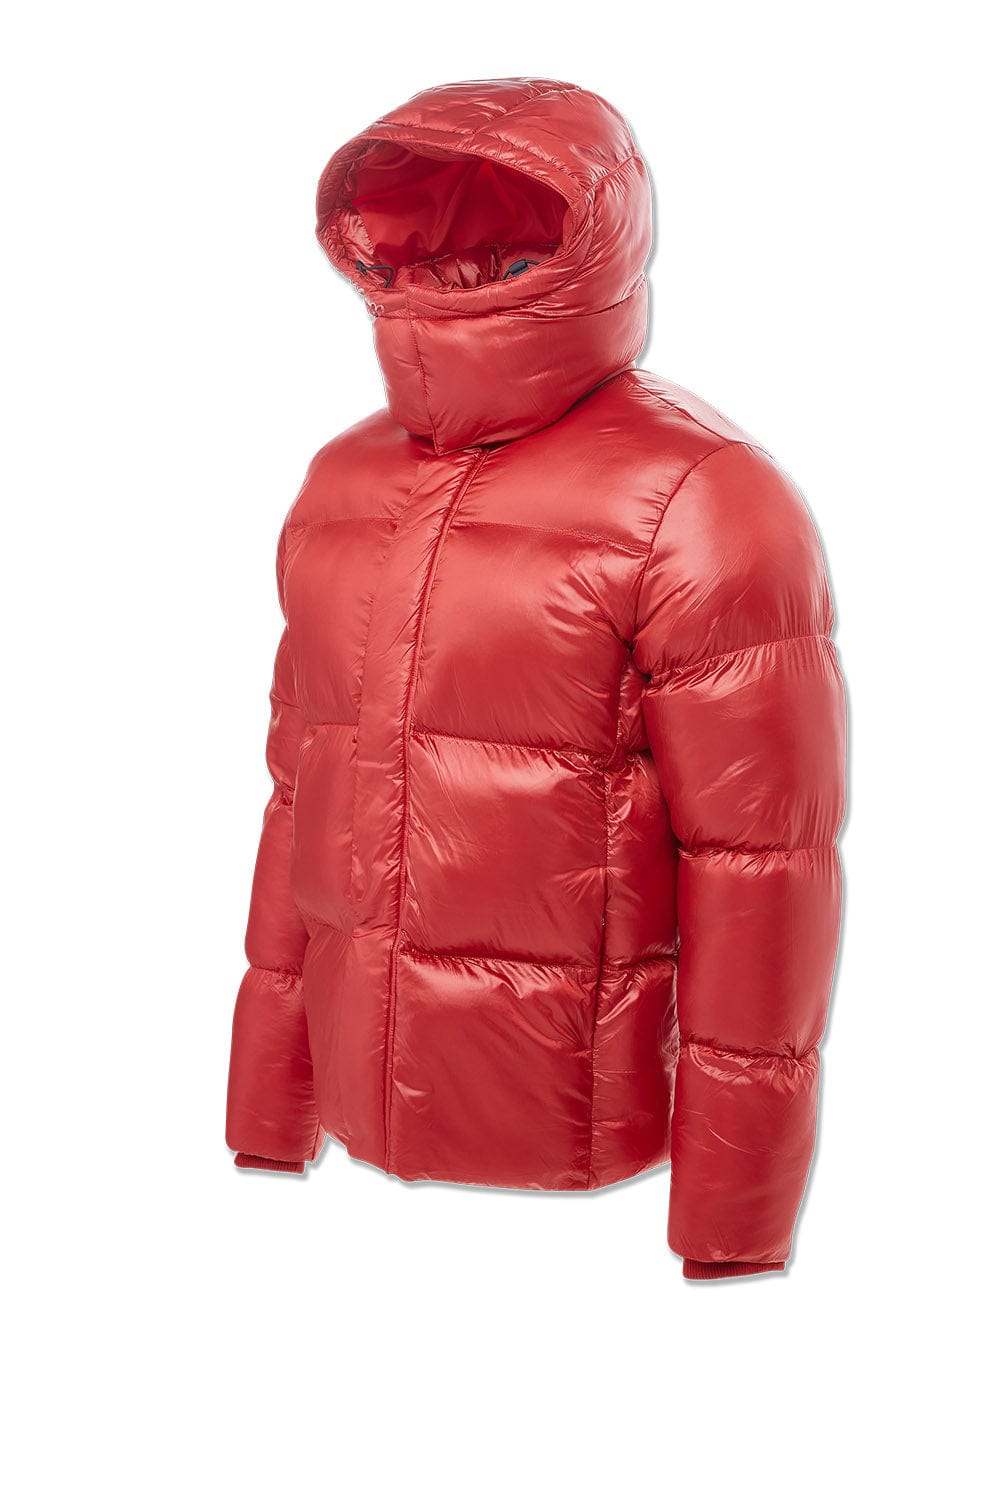 Jordan Craig Astoria Bubble Jacket (Red)